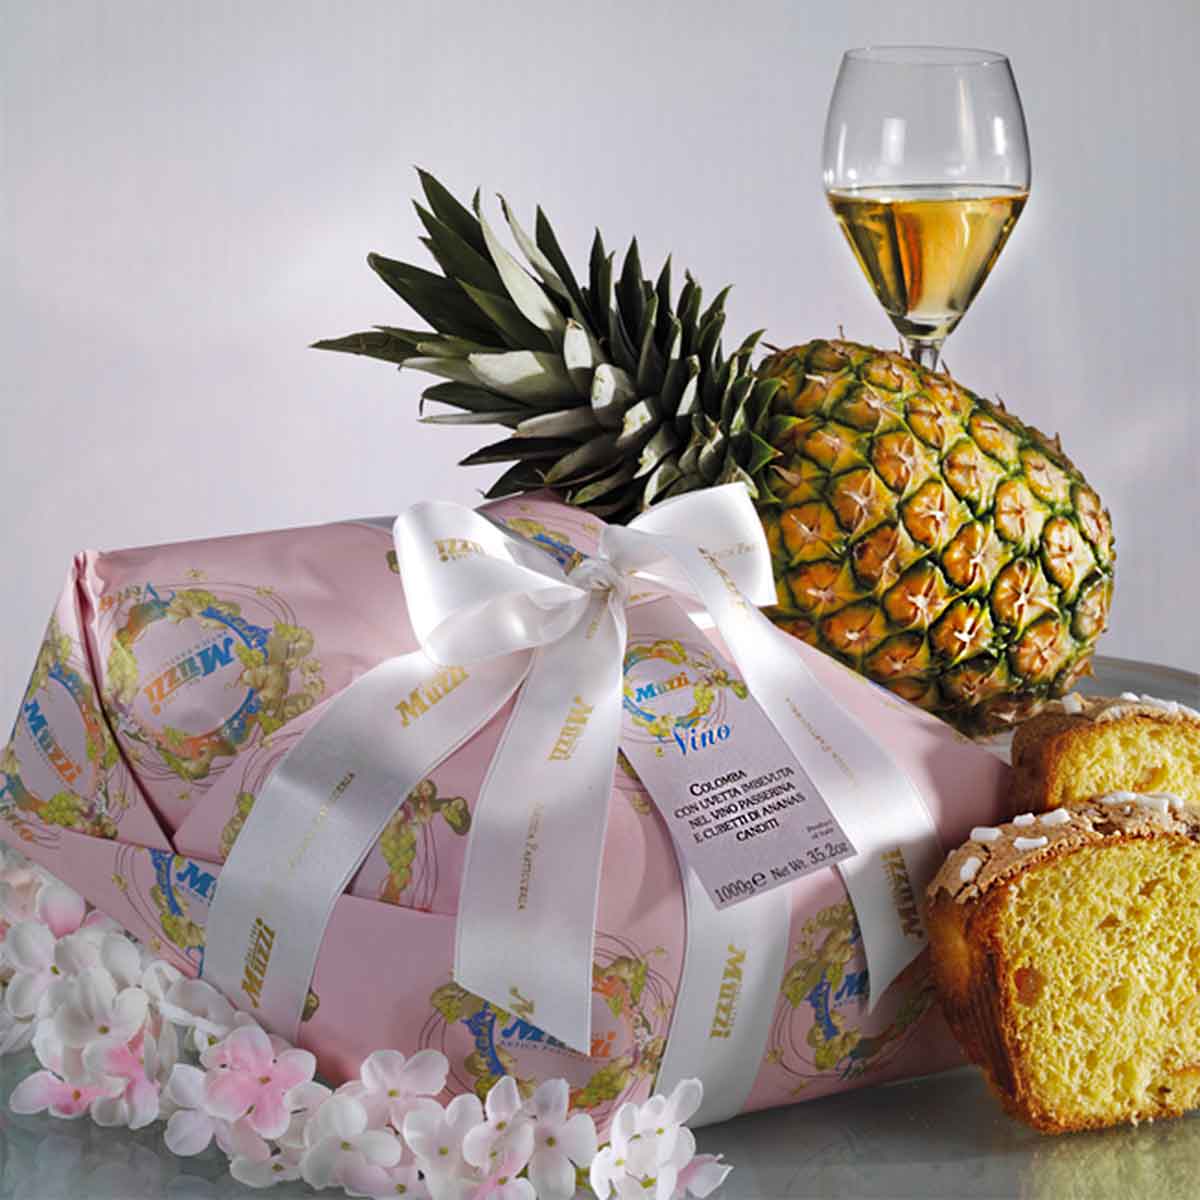 Colomba con uvetta imbevuta nel vino Passerina e cubetti di ananas canditi